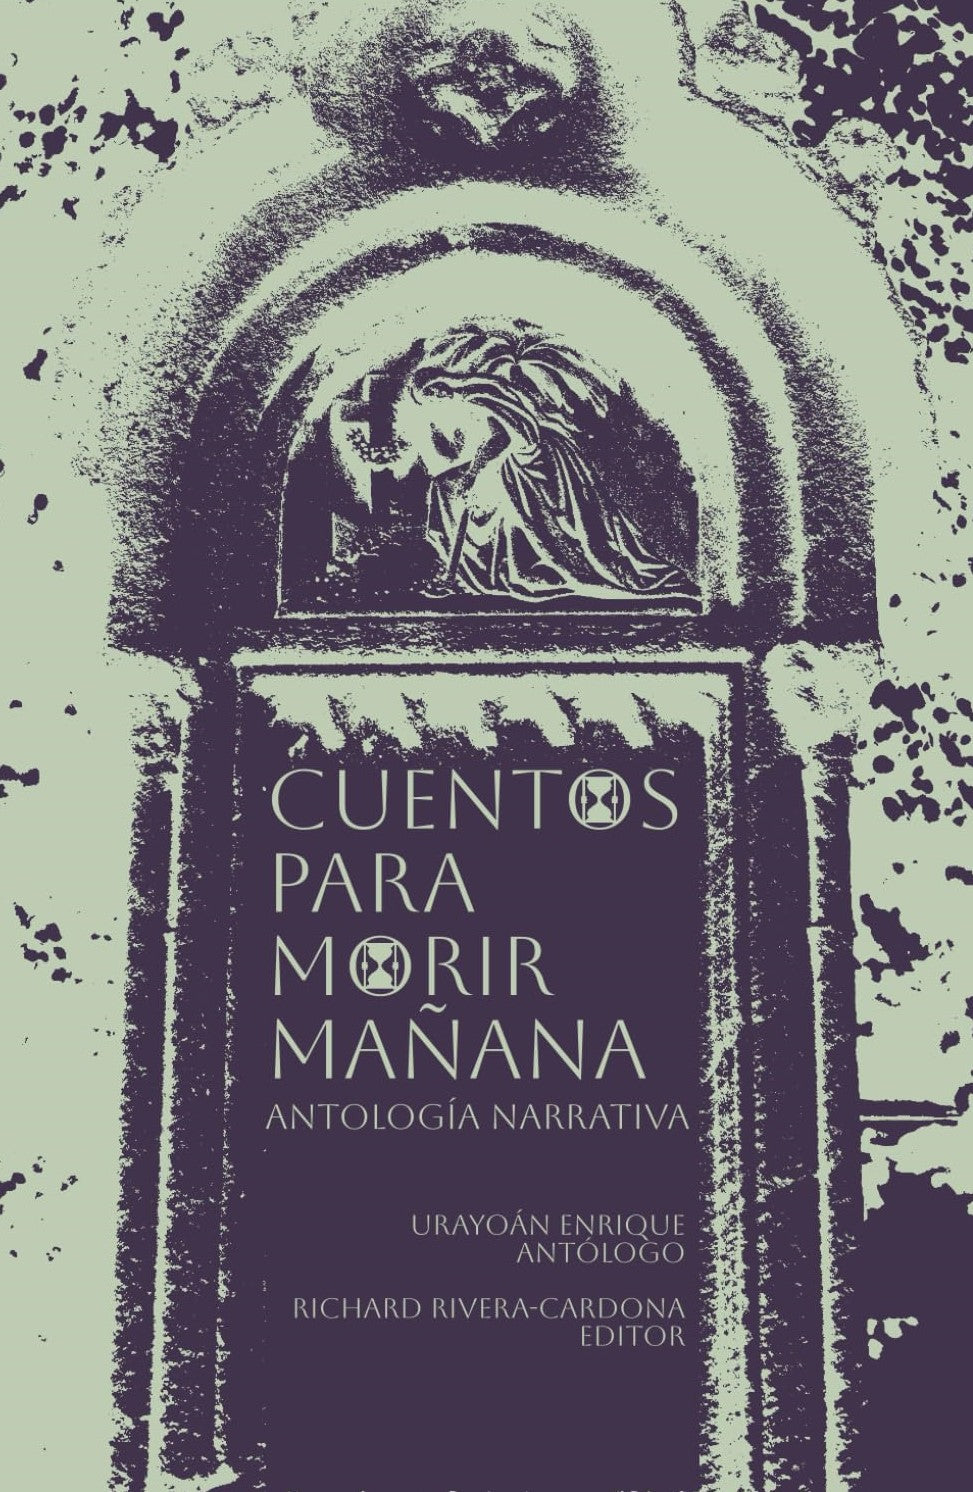 CUENTOS PARA MORIR MAÑANA - Urayoán Enrique (Antólogo), Richard Rivera-Cardona (Editor)